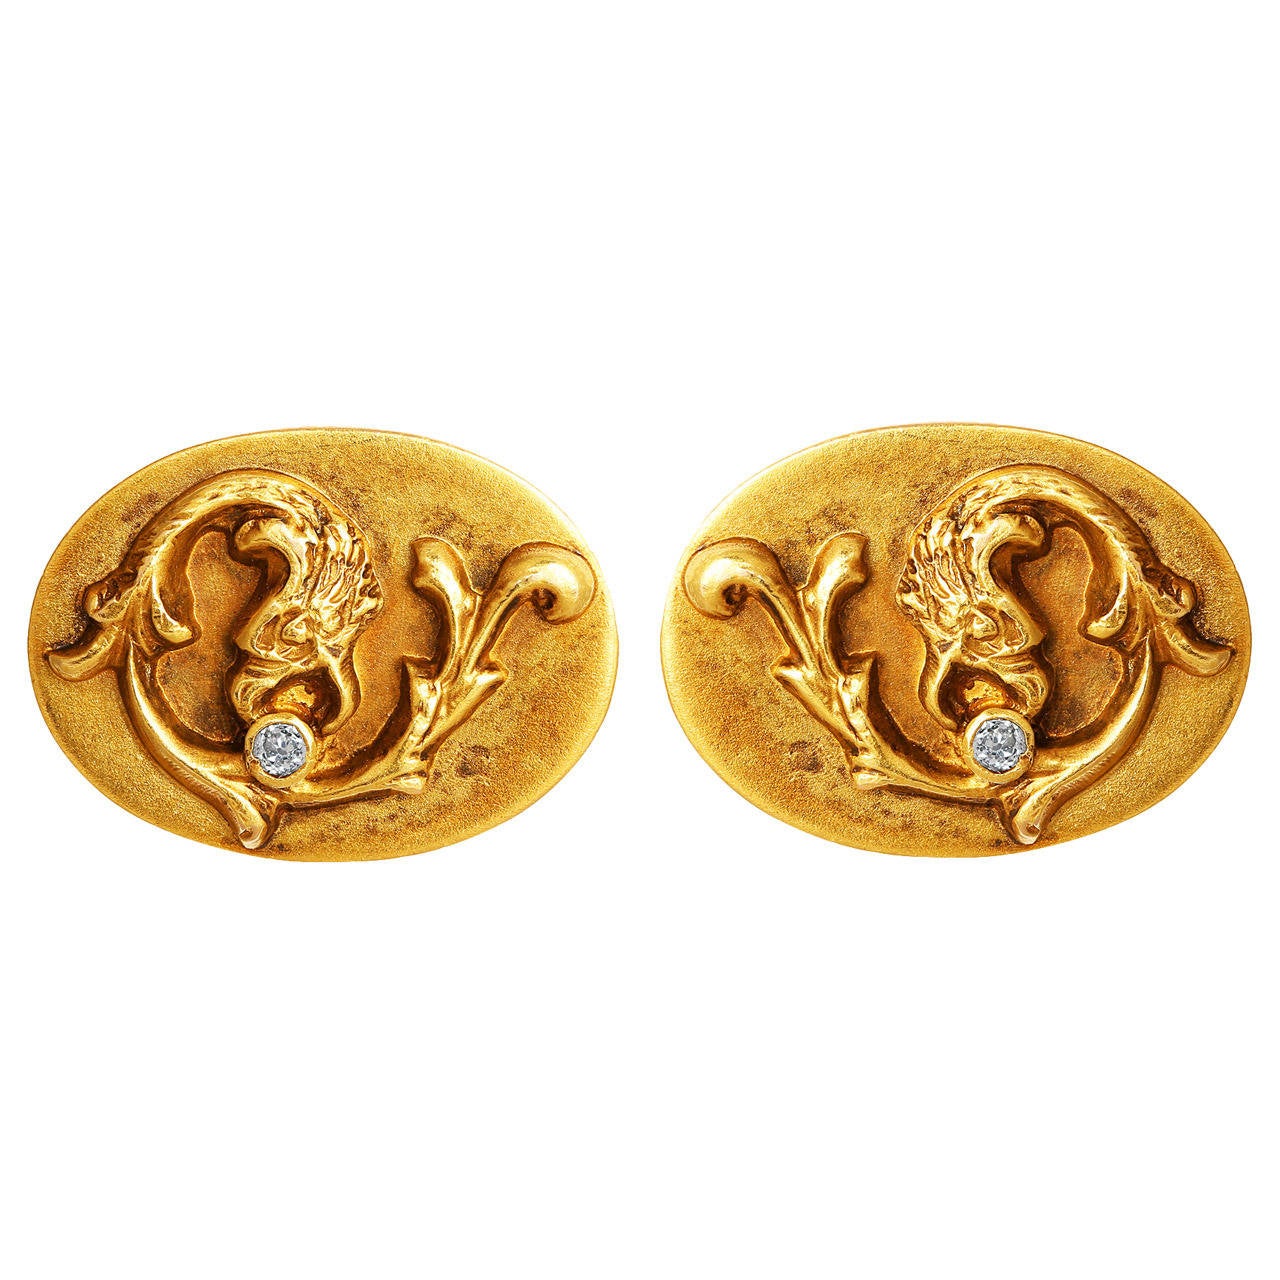 Art Nouveau Diamond Gold Cufflinks